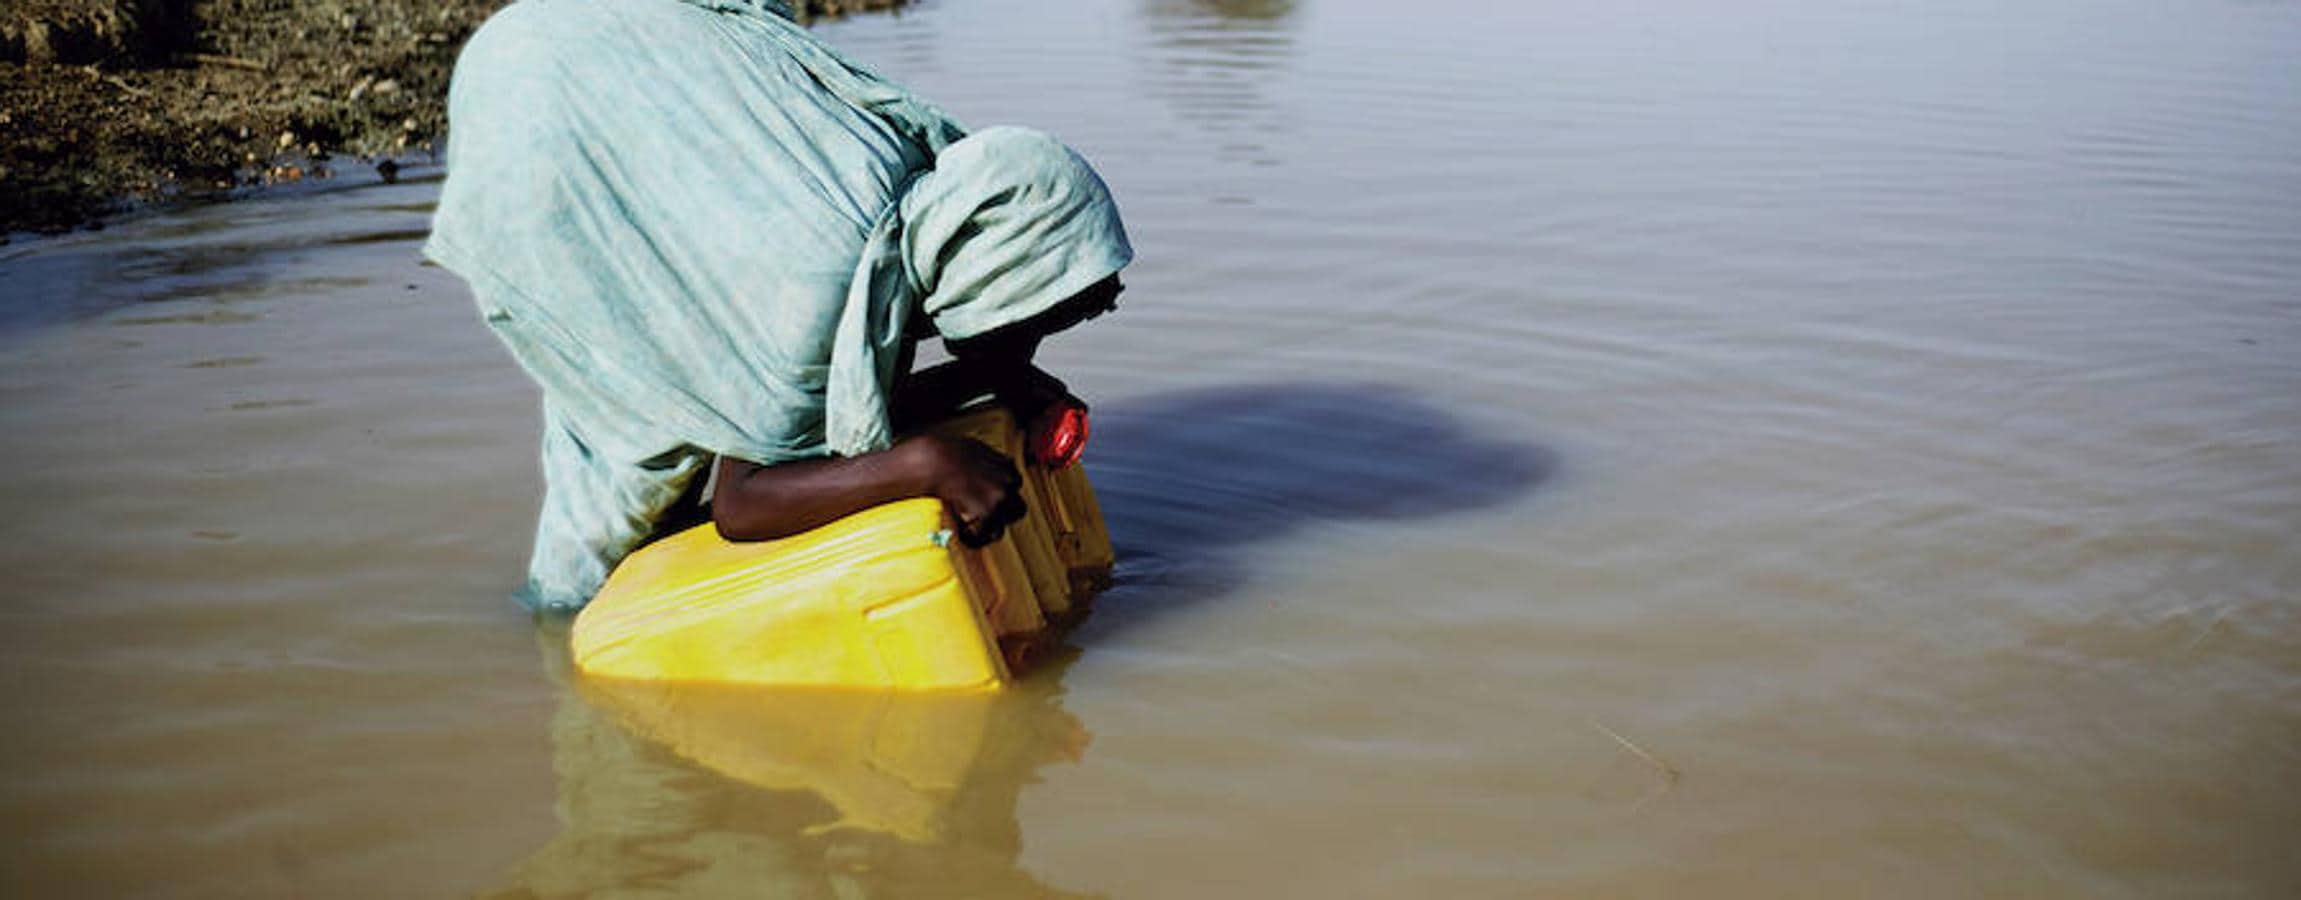 La de una mujer o una niña encorvada para recoger agua en una garrafa, es una estampa que se sigue repitiendo cada día en gran parte del mundo. Suele ser al amanecer o al atardecer, después de haber caminado kilómetros. El agua que recogen no es, muchas veces, segura. Esta mujer se encuentra en el río Gorgol de Mauritana.Ha habido avances: 147 países han logrado cumplir el Objetivo de Desarrollo del Milenio relacionado con el agua. Para garantizar una buena salud nutricional, tan importante como los alimentos es contar con un pozo o un punto de agua seguro.. 